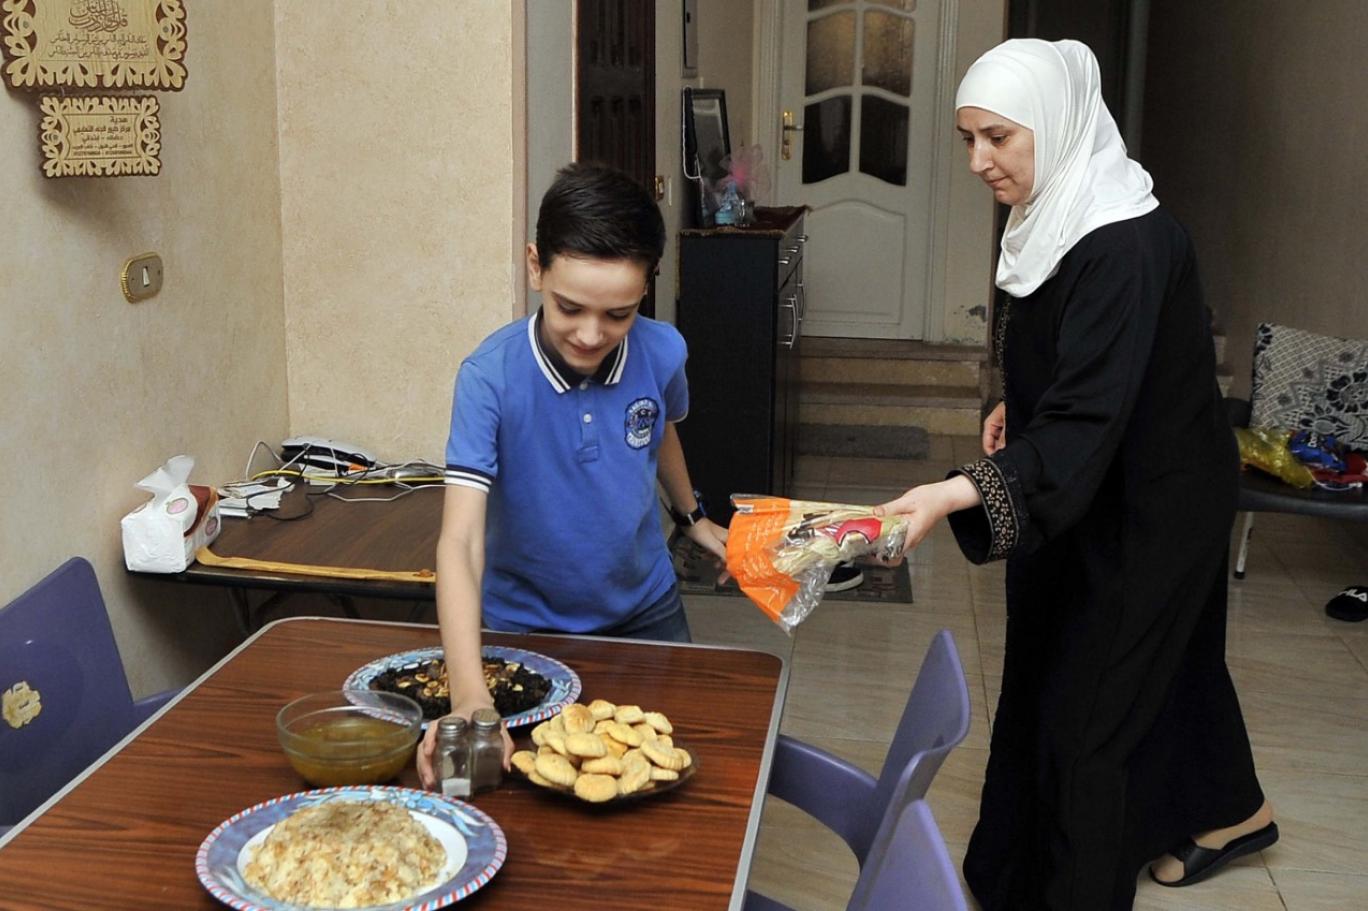  تتبادل العائلات الزيارات خلال أيام العيد... وتحضر الأطباق المميزة من كل بلد